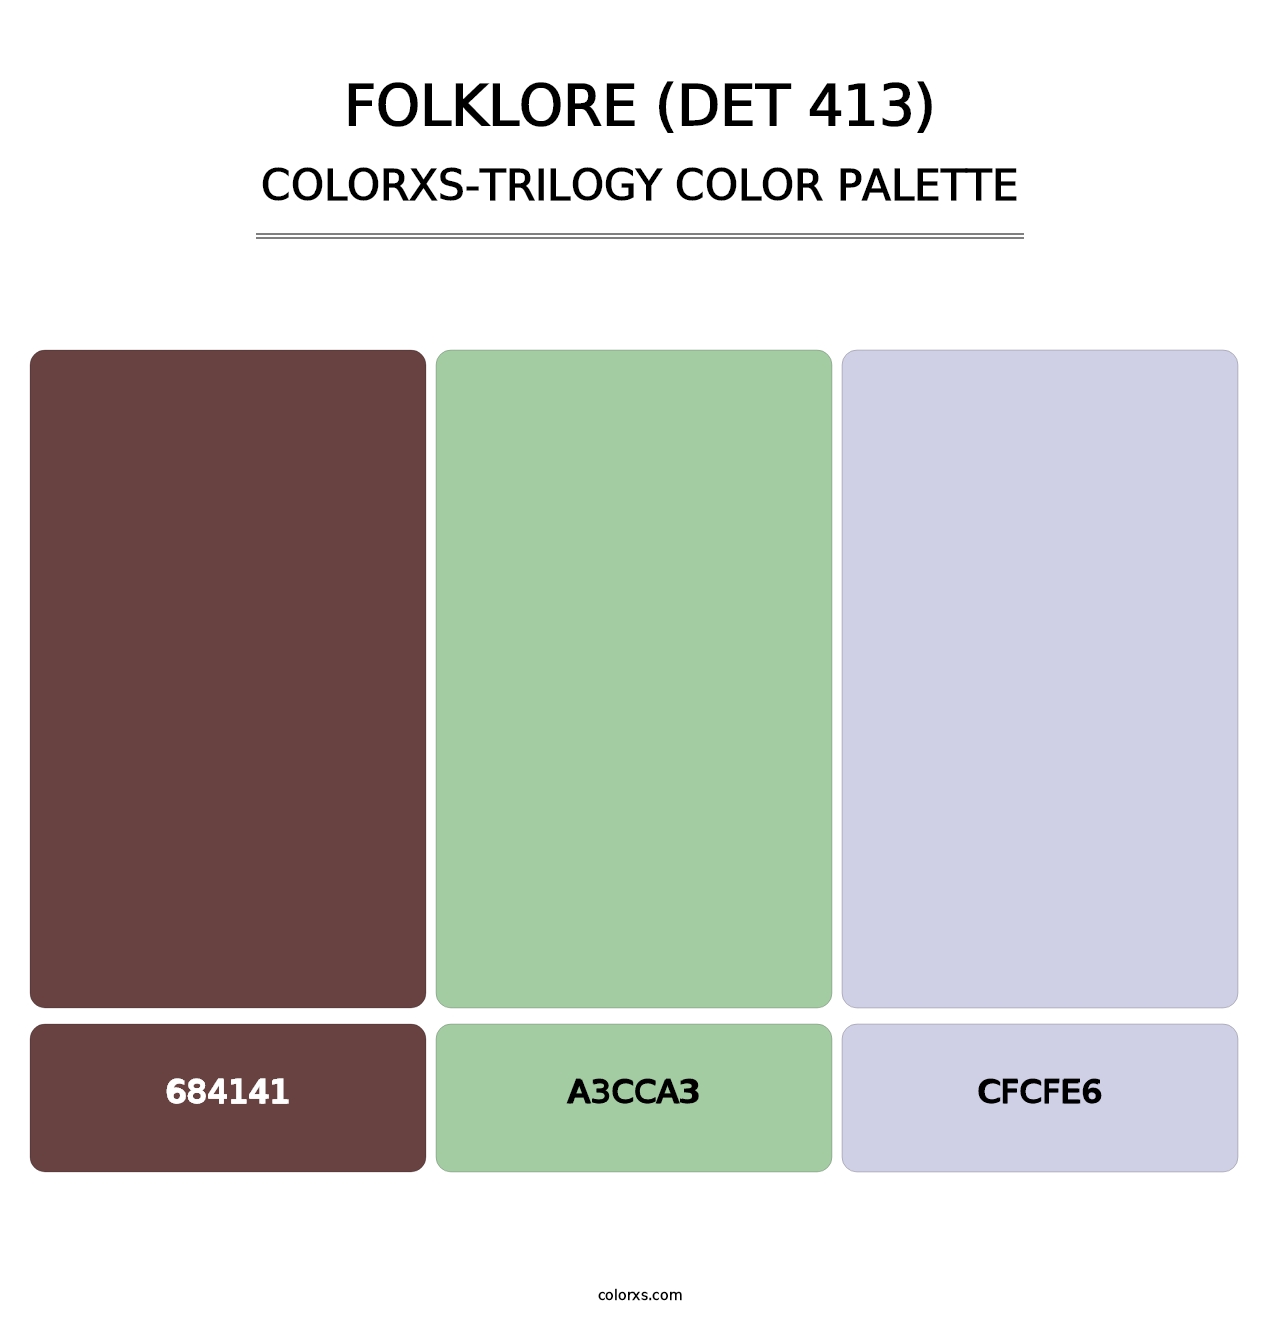 Folklore (DET 413) - Colorxs Trilogy Palette